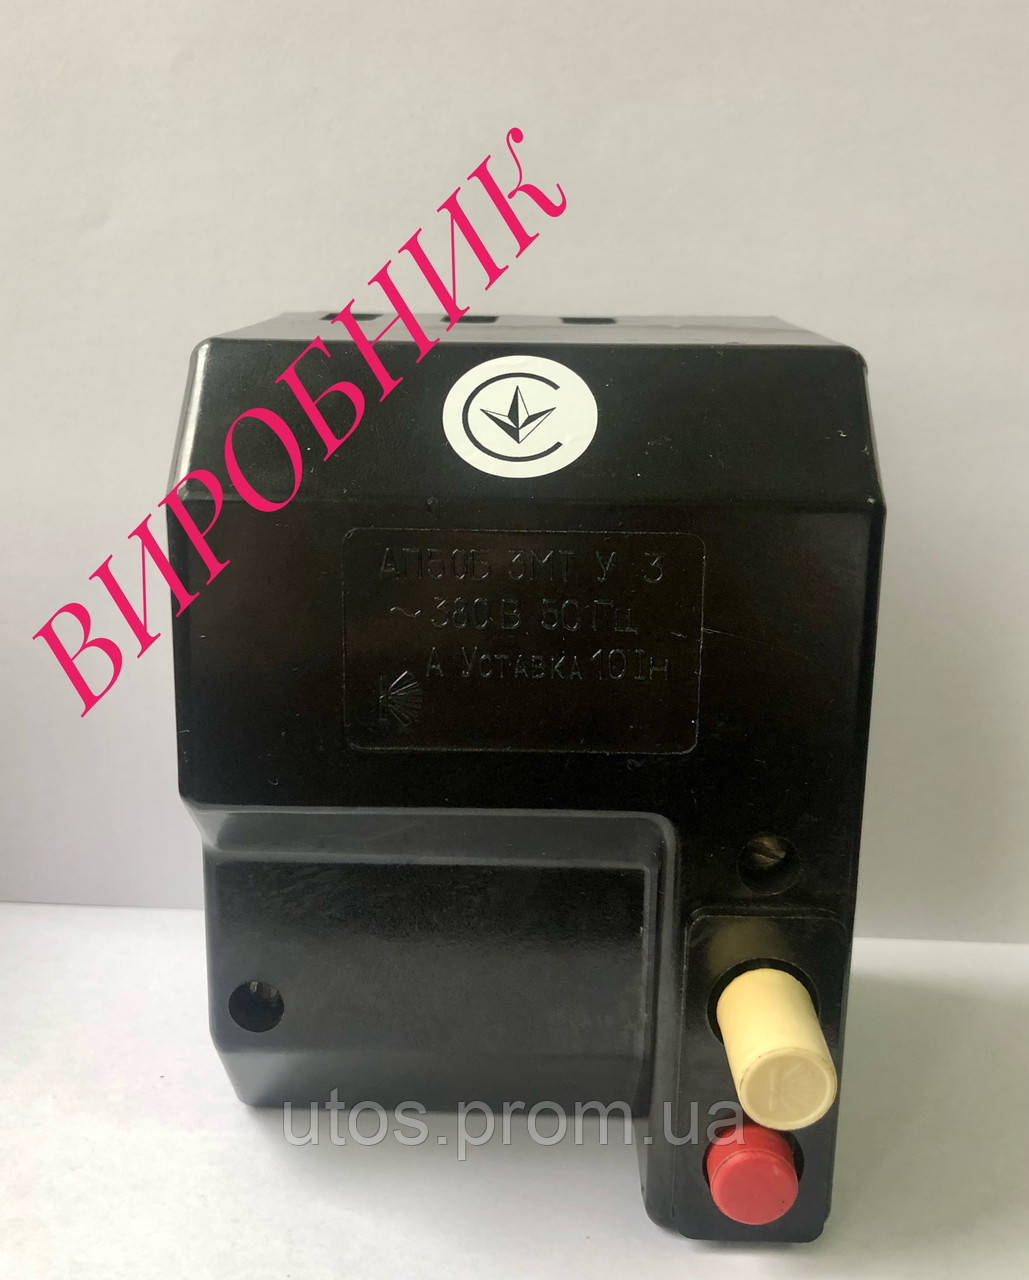 Автоматичний вимикач АП50Б 2 МТ - 40А; 50А; 63А (ПОГ "Коростенське УВП УТОС")